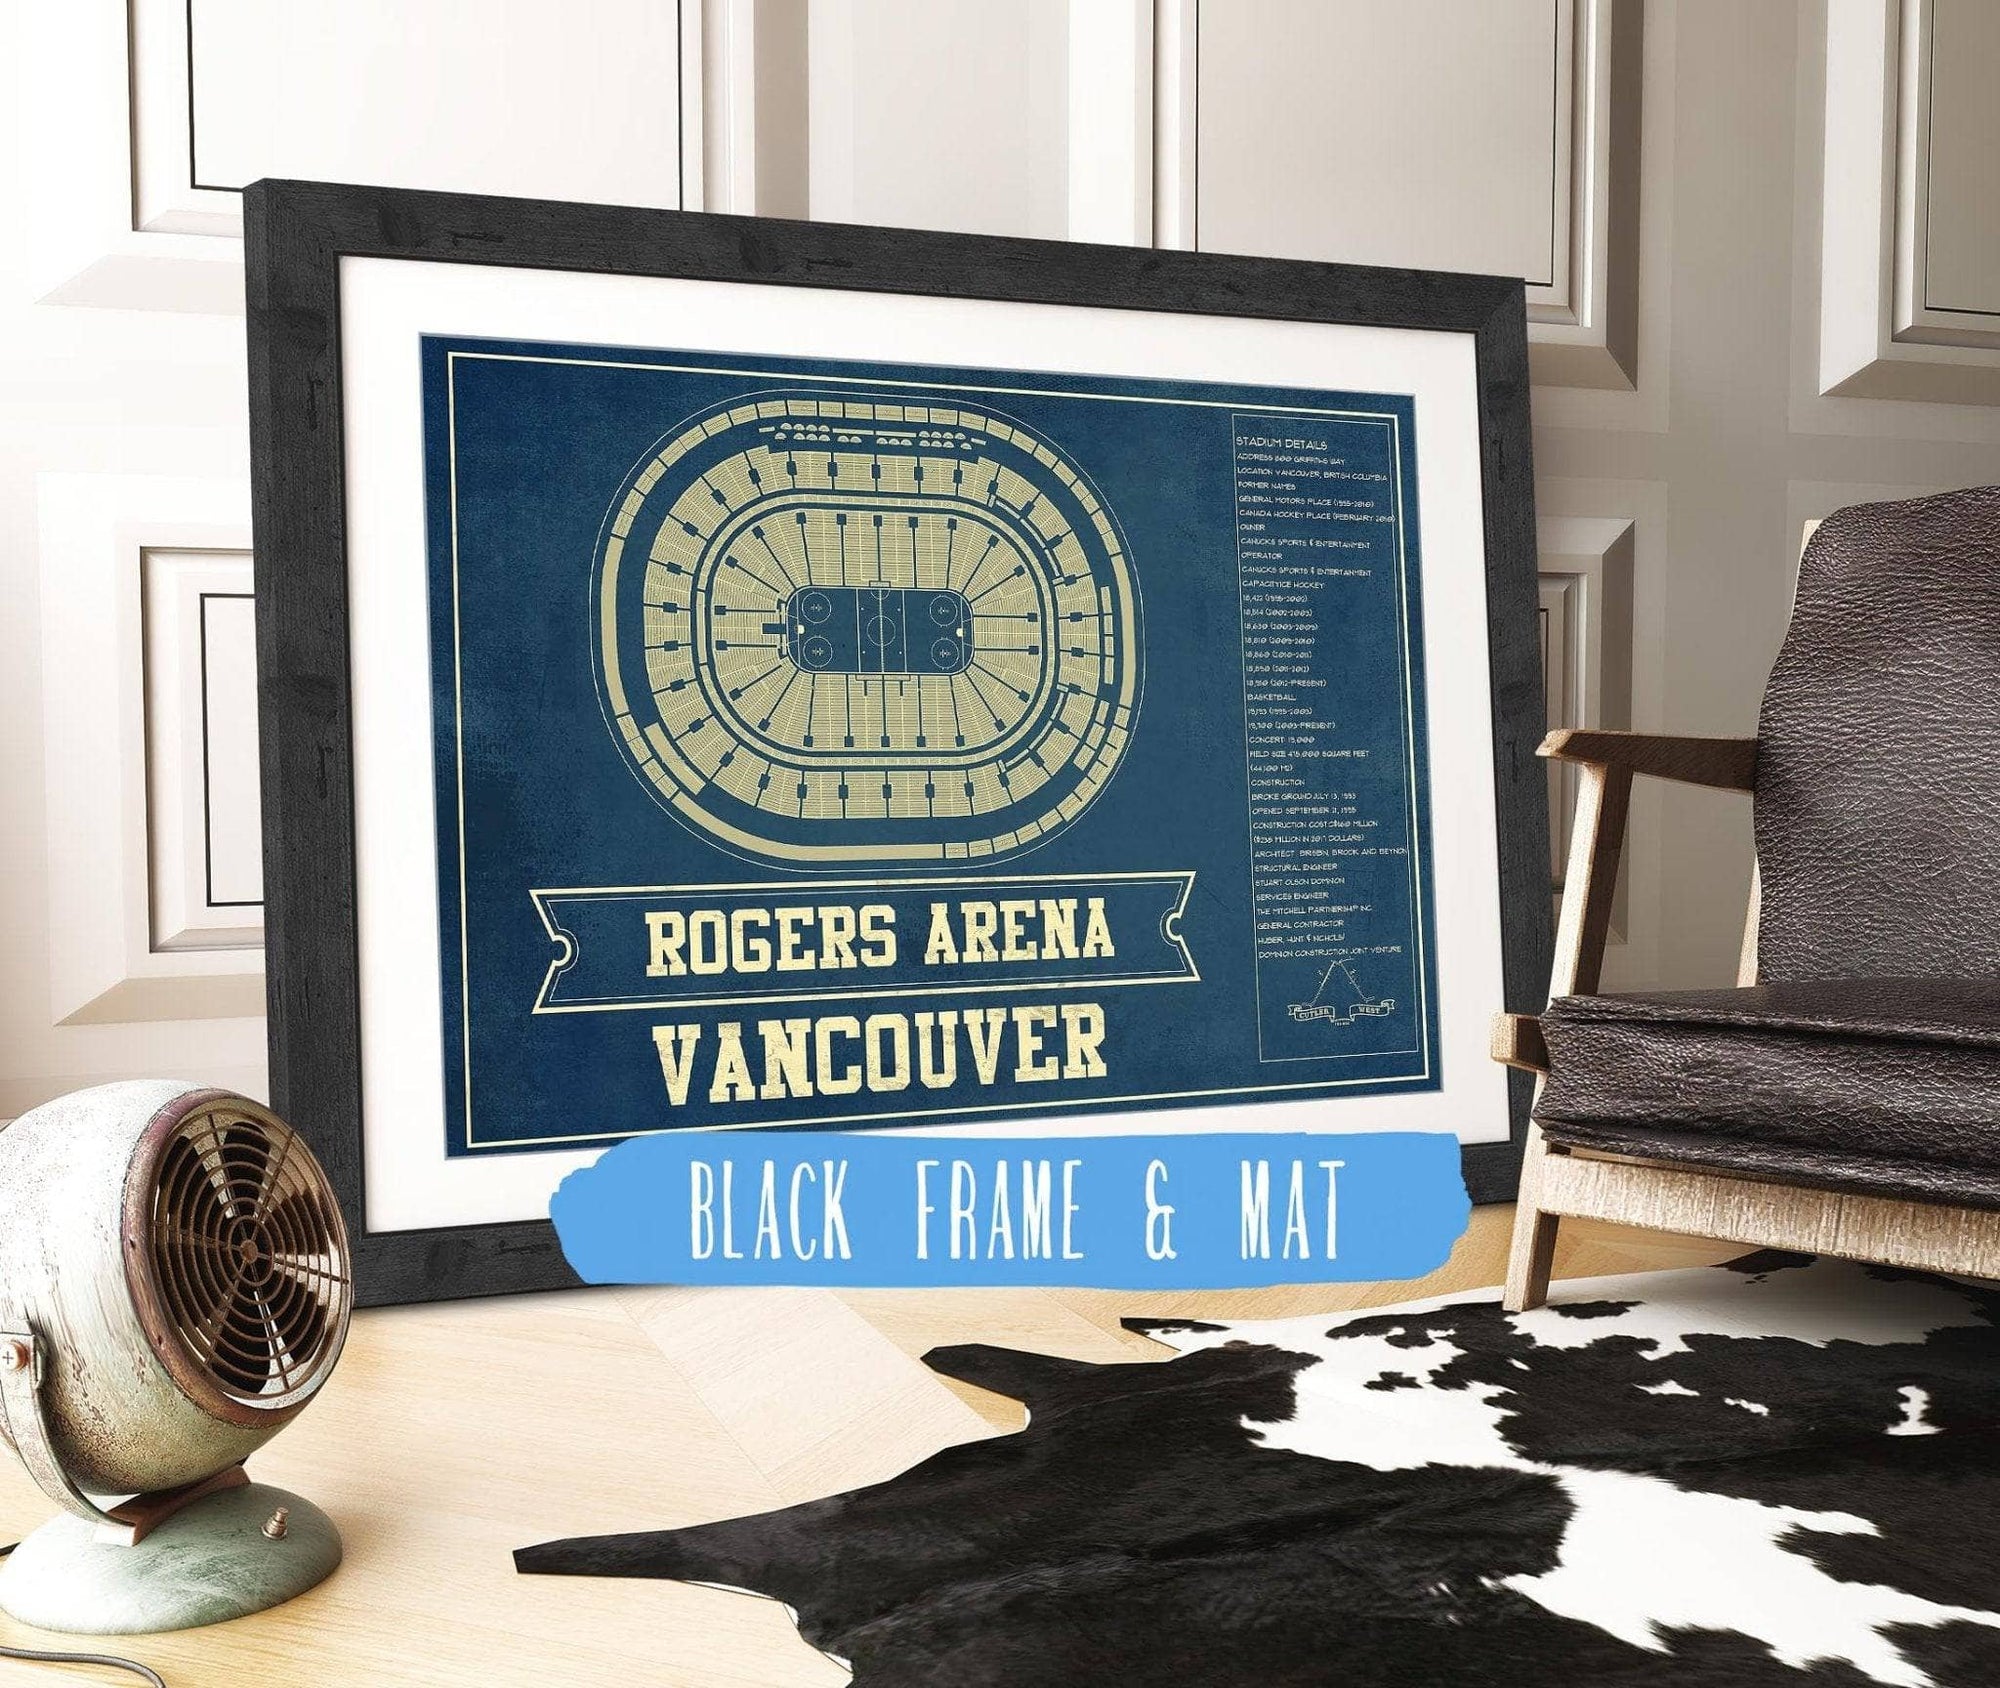 Cutler West 14" x 11" / Black Frame & Mat Vancouver Canucks - Rogers Arena Vintage Hockey Blueprint NHL Print 673825395_81448